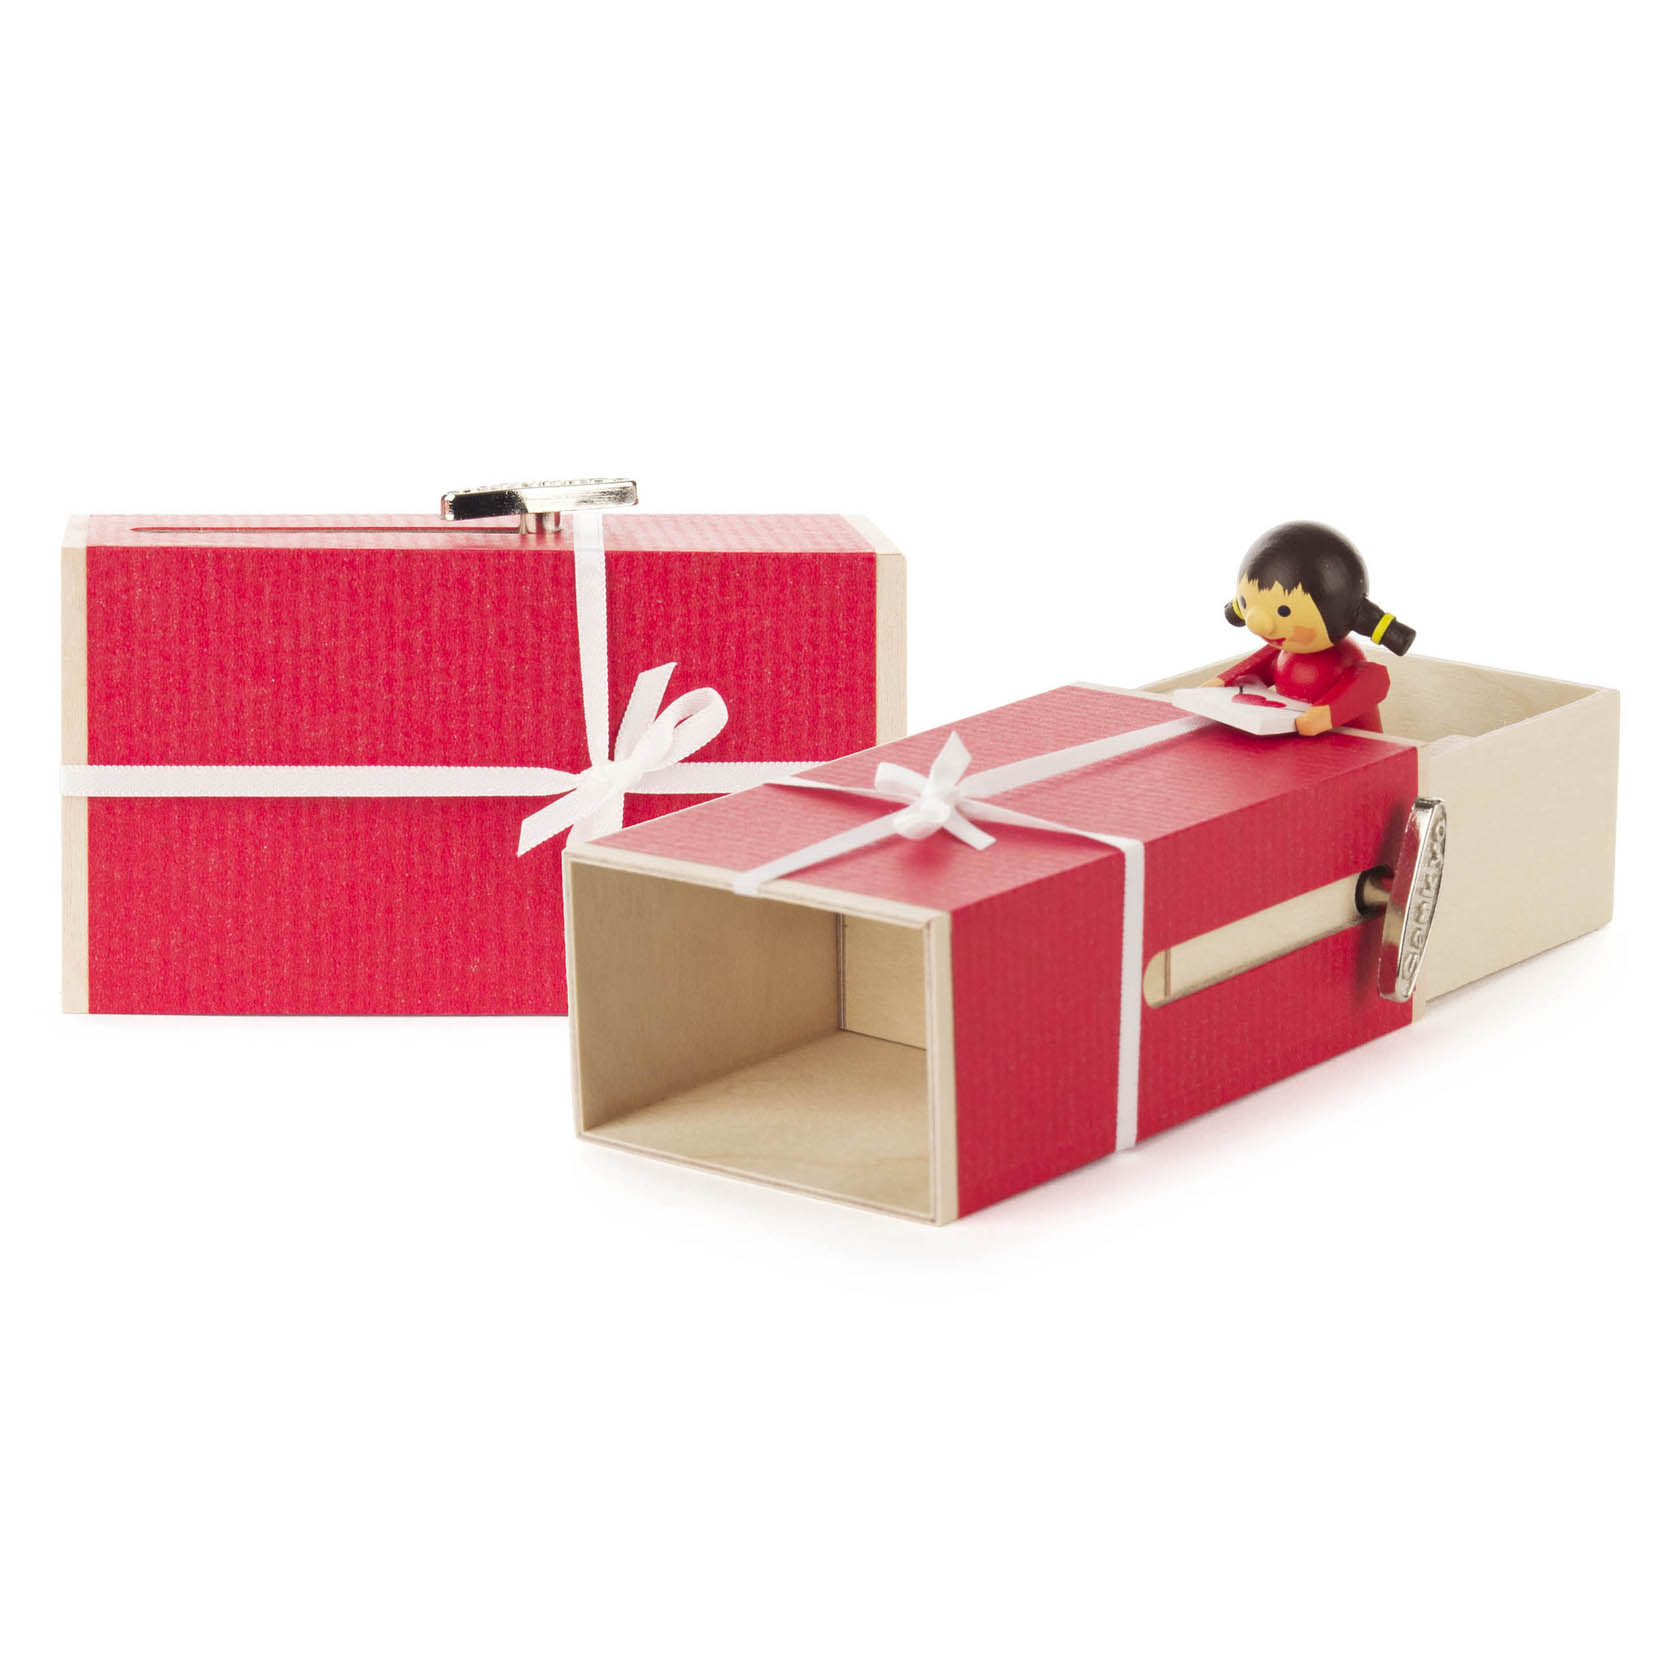 Schiebebox "Geschenke-Box" Mädchen mit Brief Melodie: Kanon in D-Dur im Dregeno Online Shop günstig kaufen